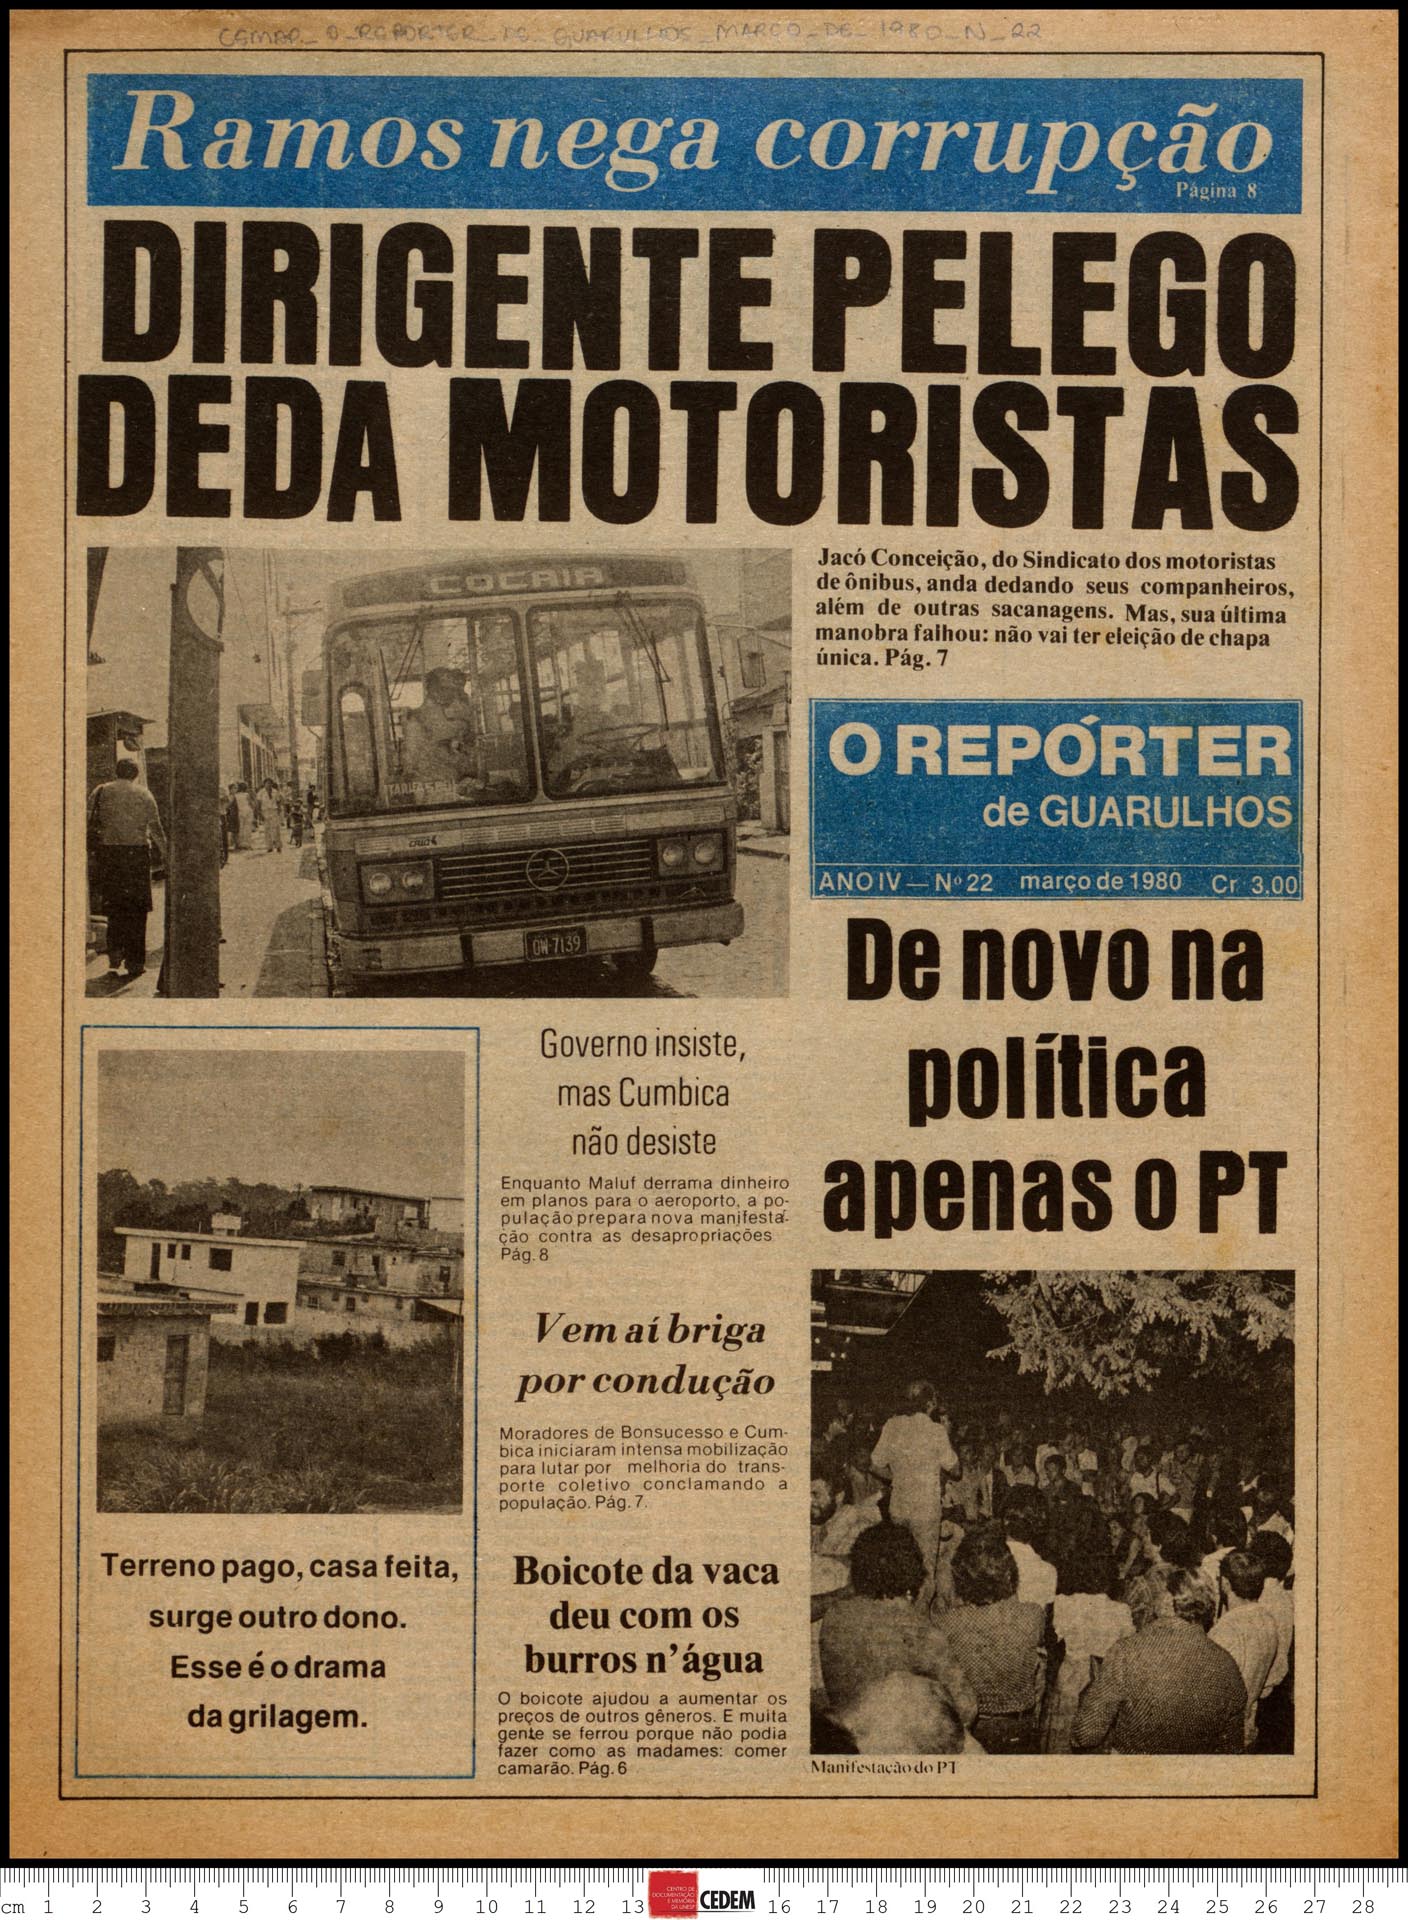 O reportér de Guarulhos - 22 - mar. 1980